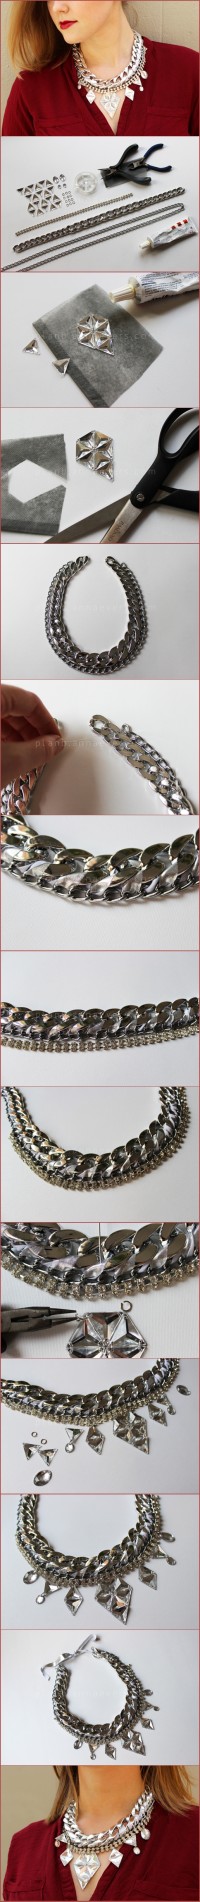 DIY Silver maxi necklace